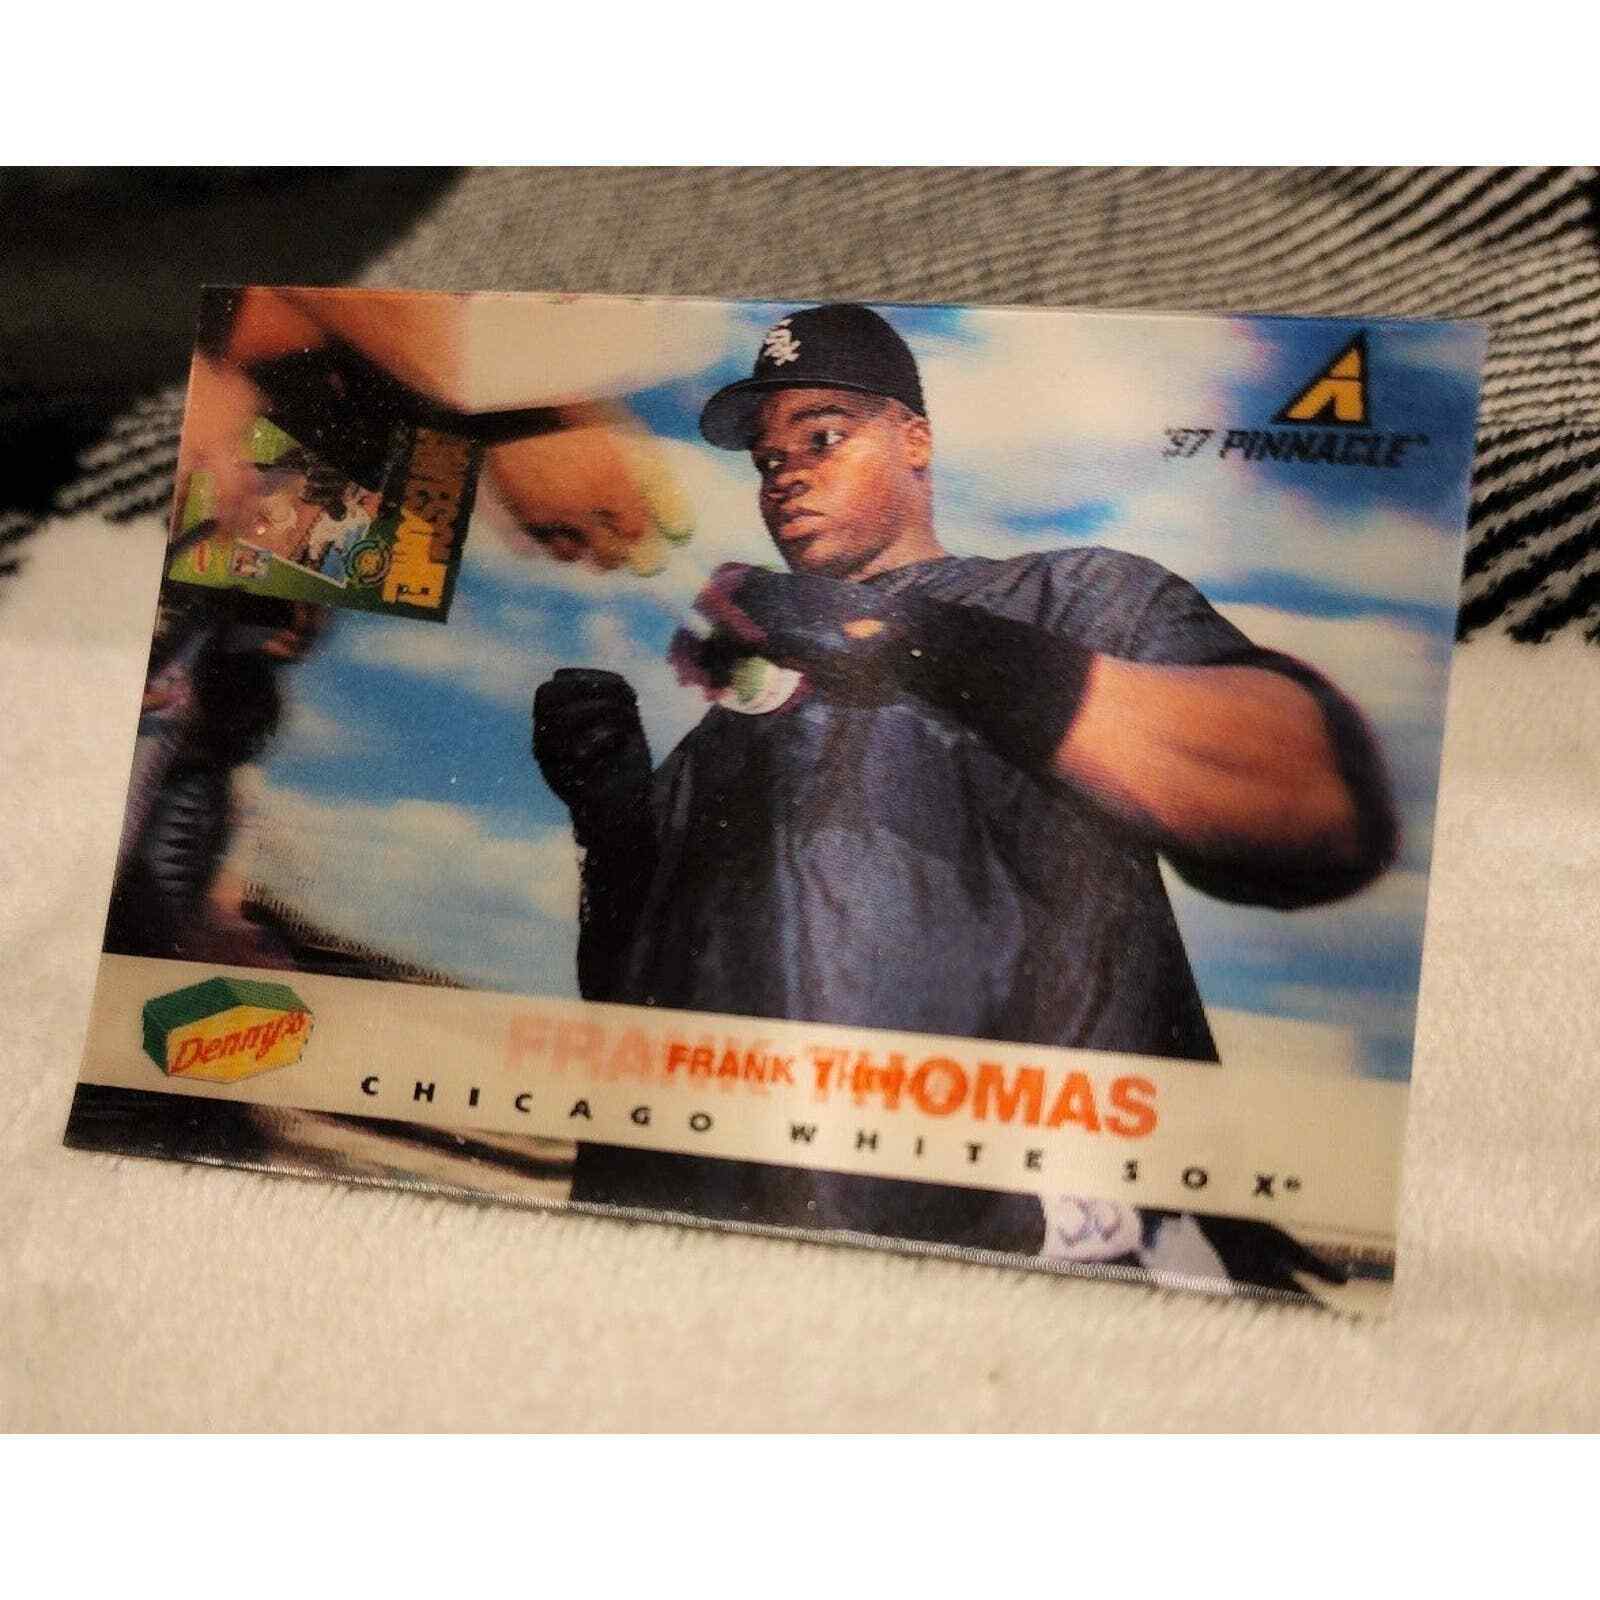 Frank Thomas, White Sox, 1997 Pinnacle, Denny\'s Baseball Card